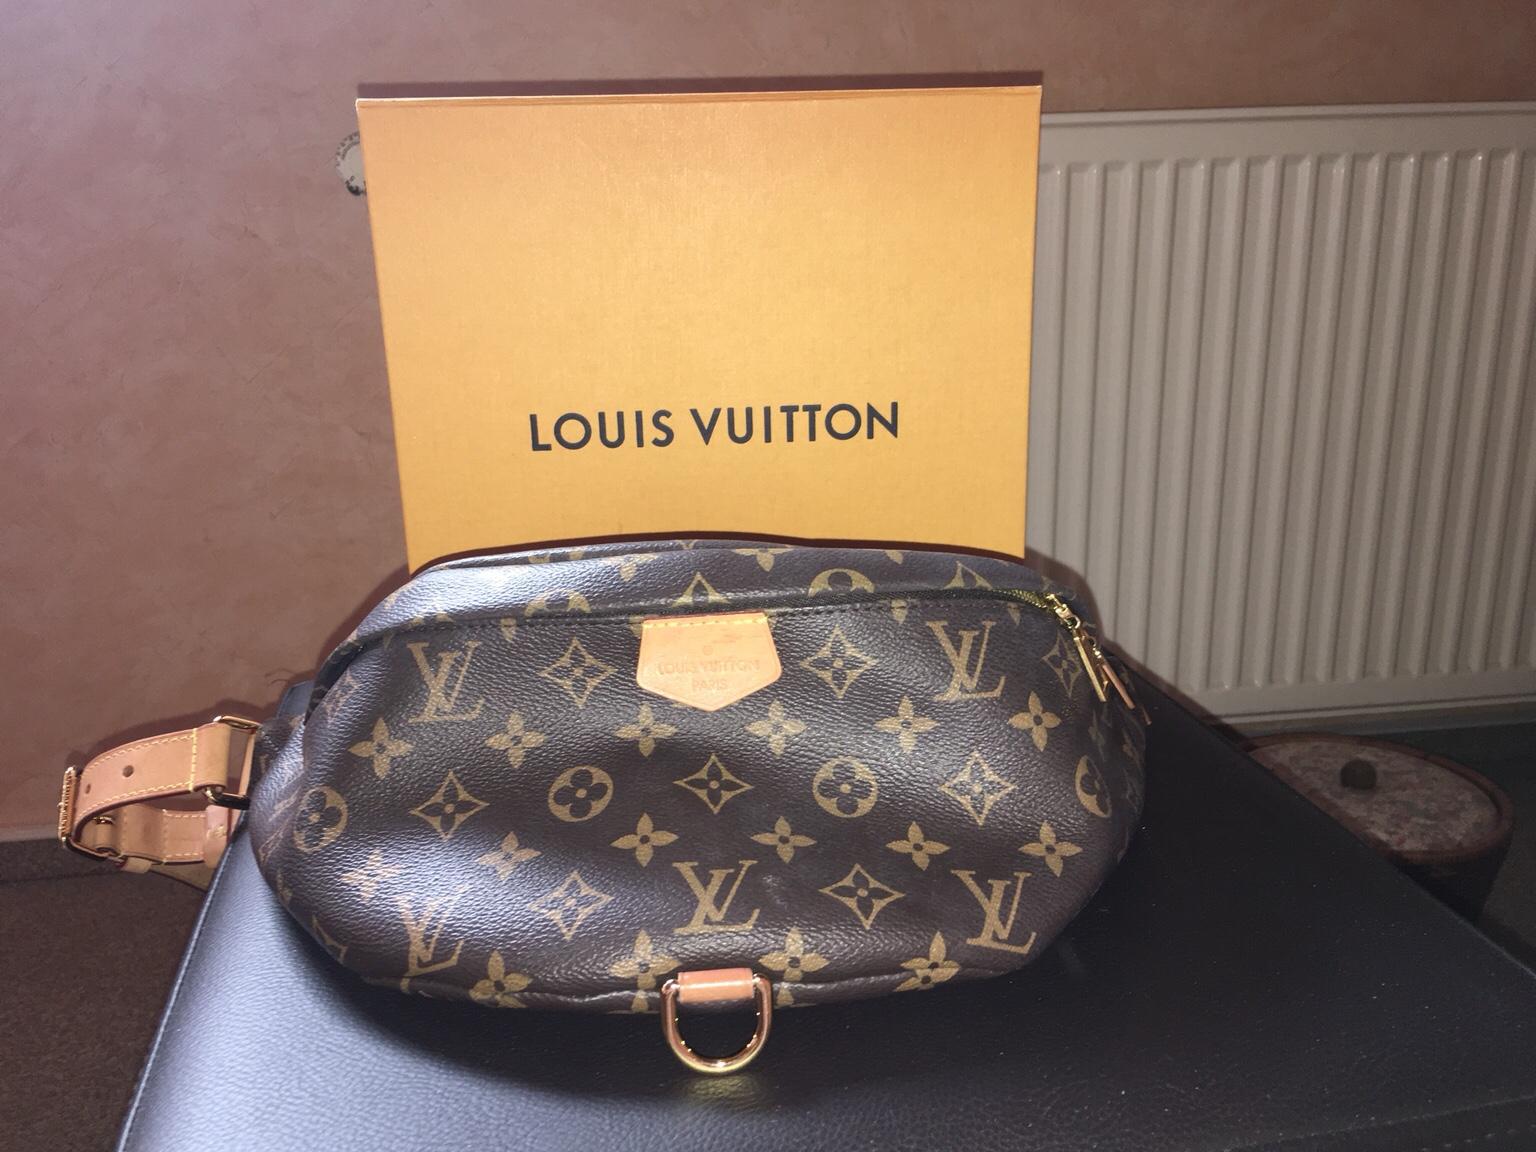 Original Louis Vuitton bauchtasche in 51515 Kürten für 1.000,00